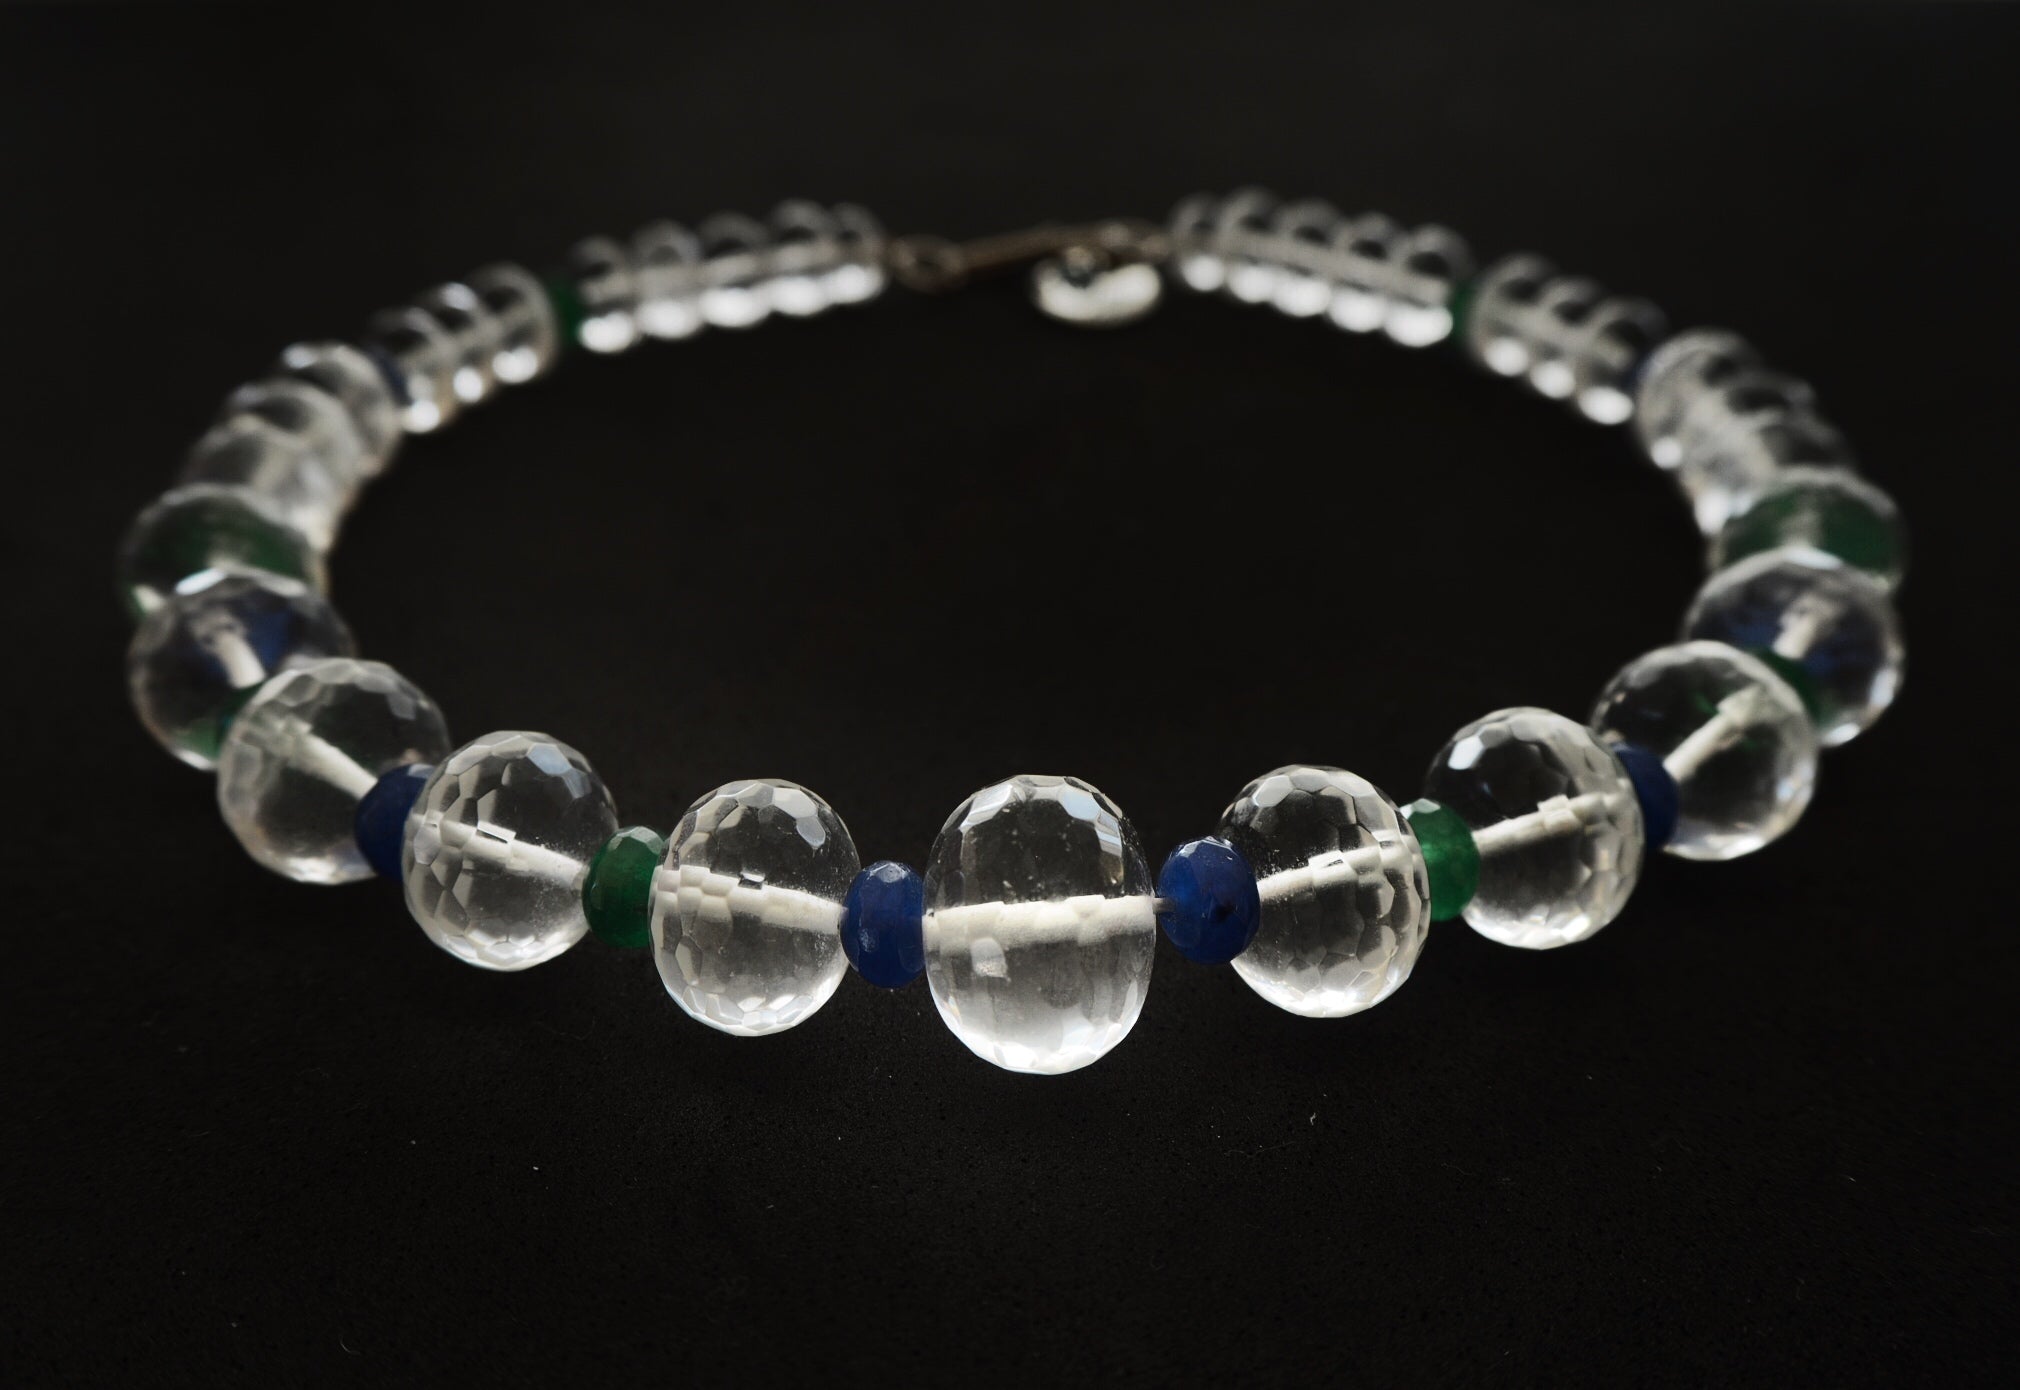 Collier de quartz de cristal de roche et de jade bleu et vert, pierres précieuses naturelles, collier unique en son genre